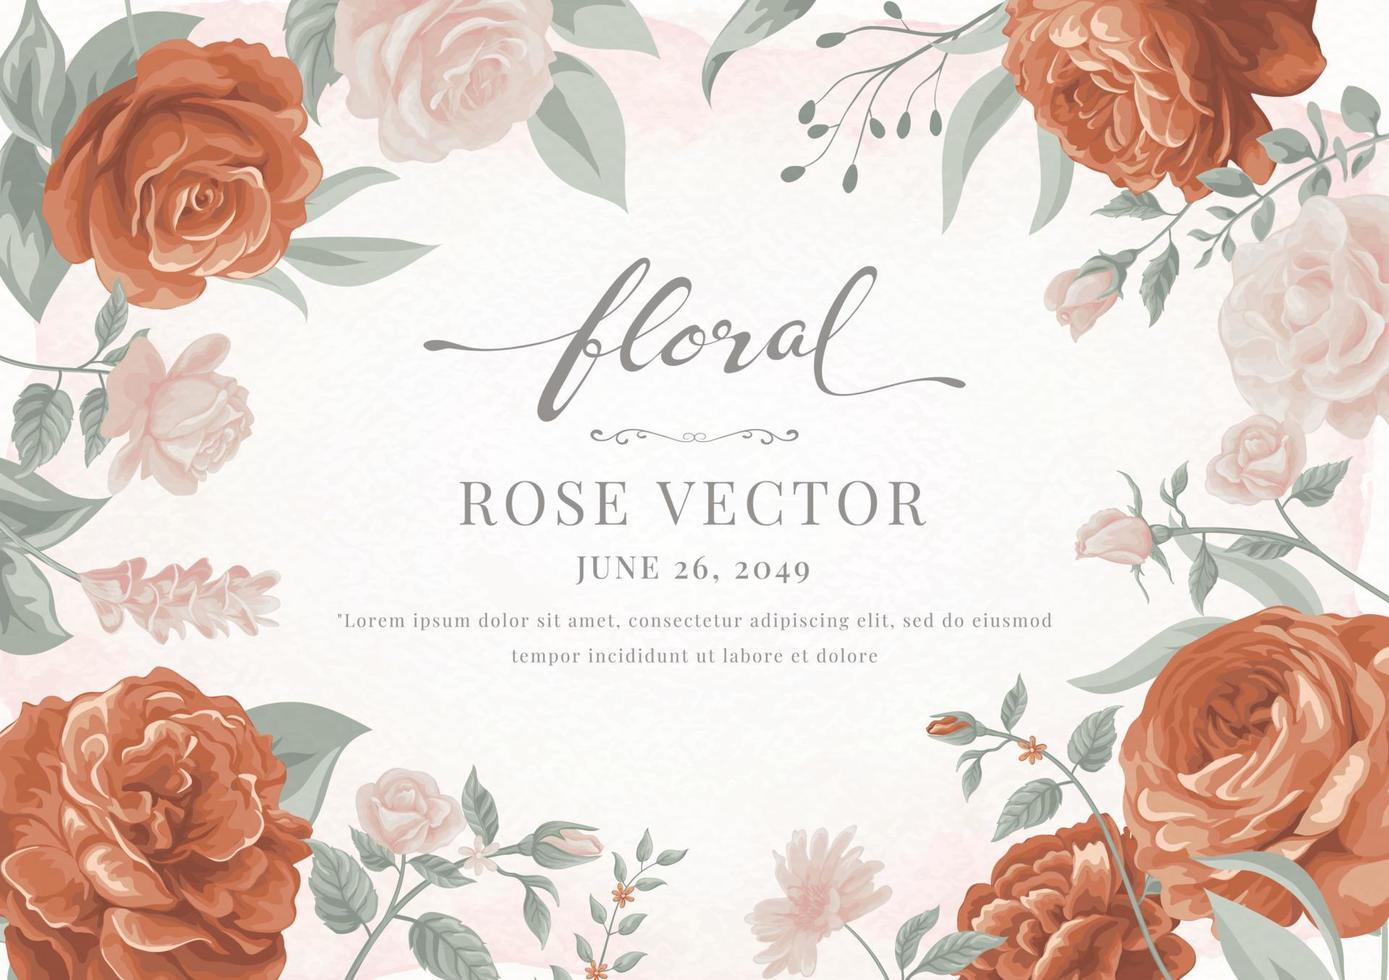 mooie roze bloem en botanisch blad digitale geschilderde illustratie voor liefde bruiloft Valentijnsdag of arrangement uitnodiging ontwerp wenskaart vector